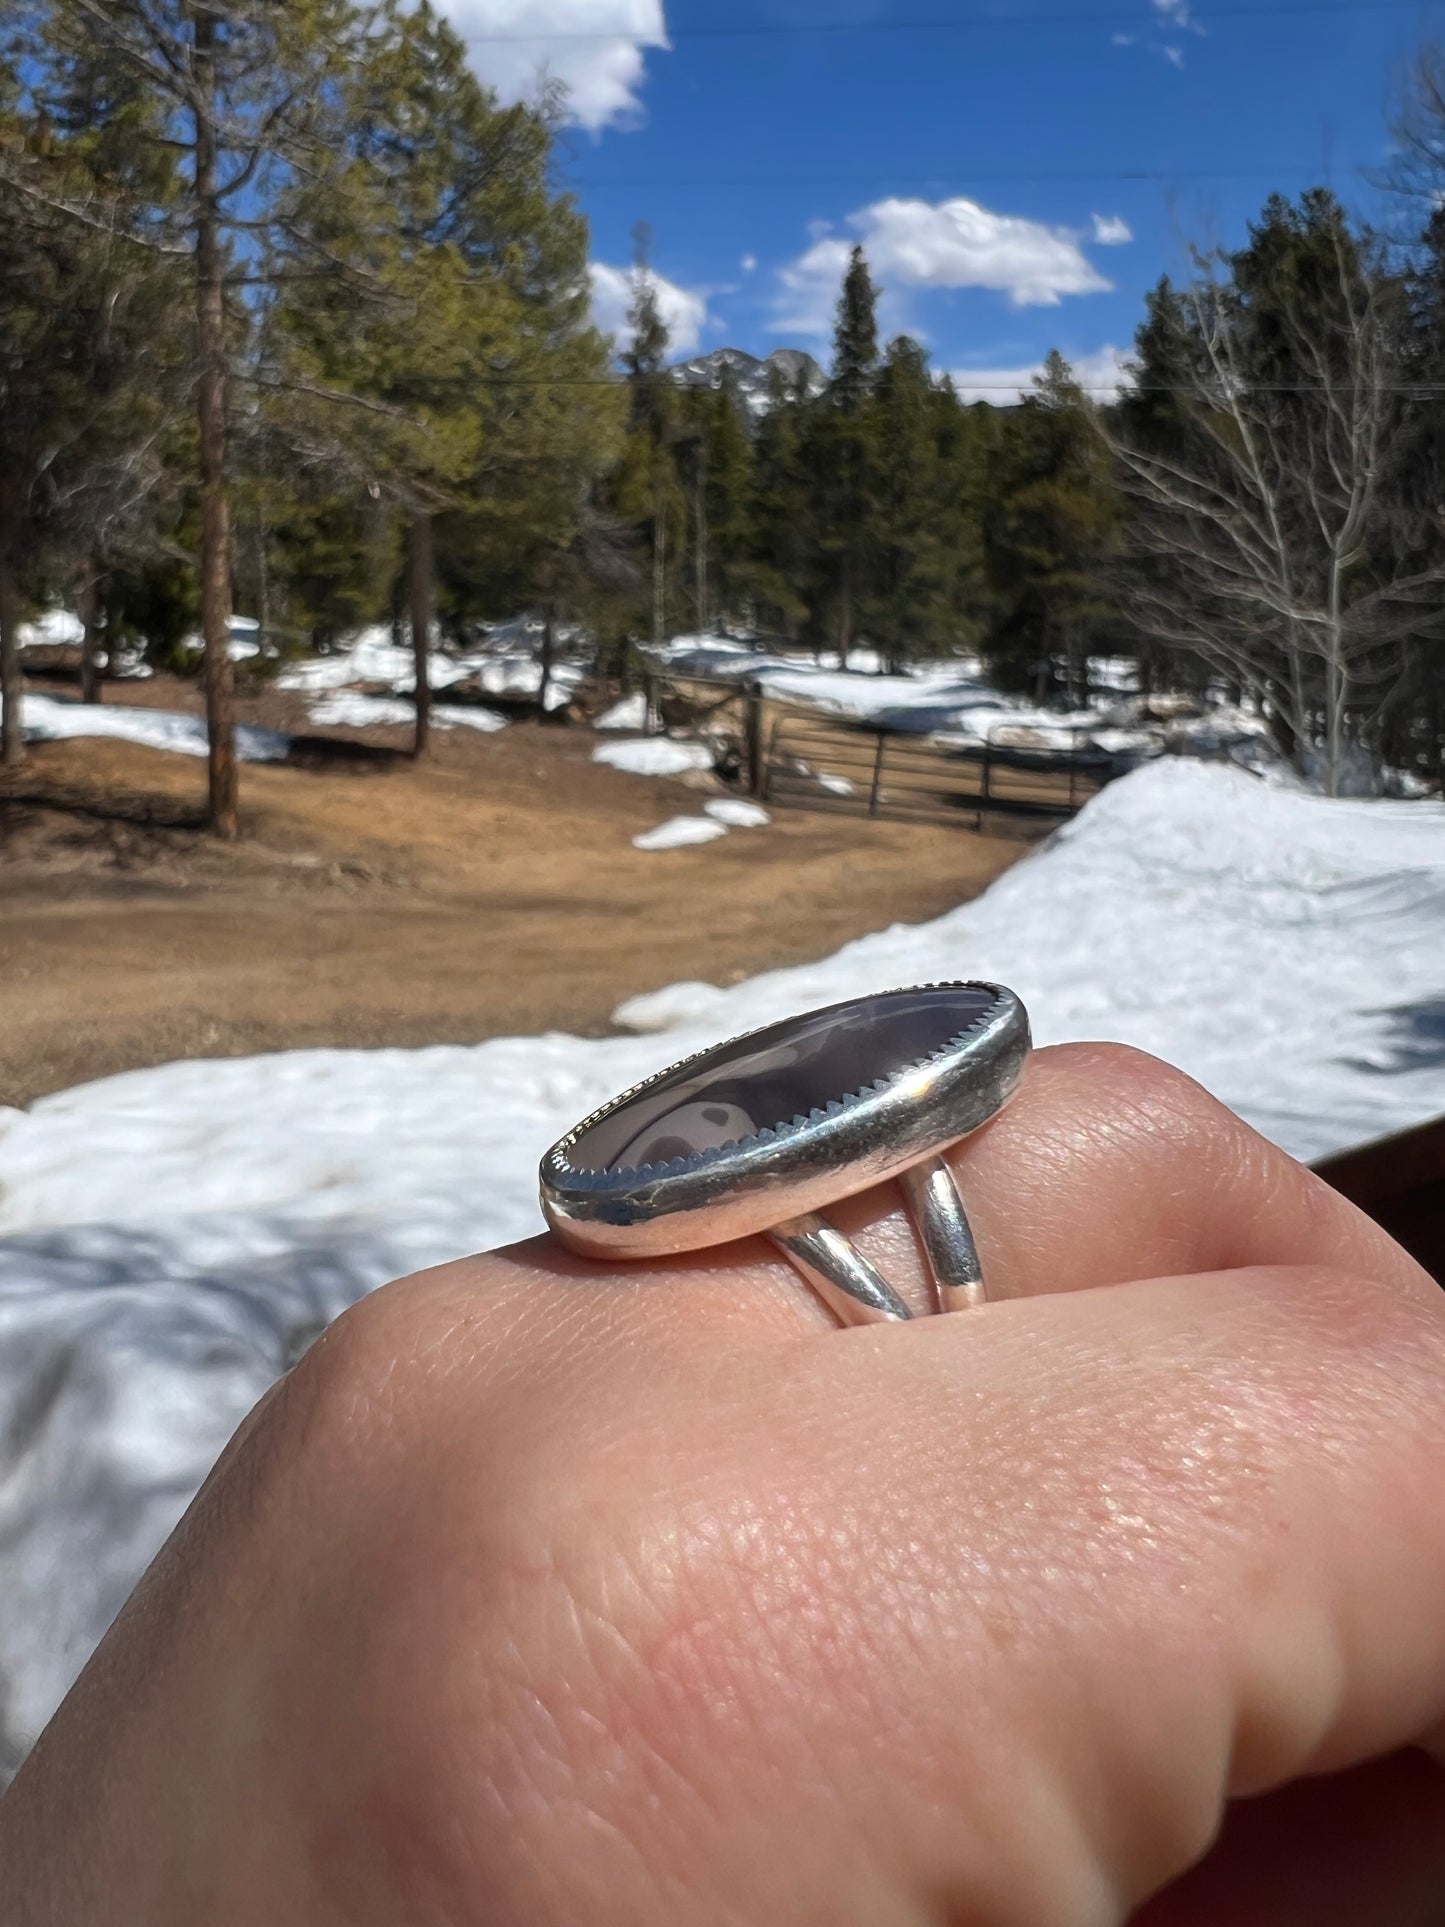 Willow Creek Jasper Ring - Size 8.5